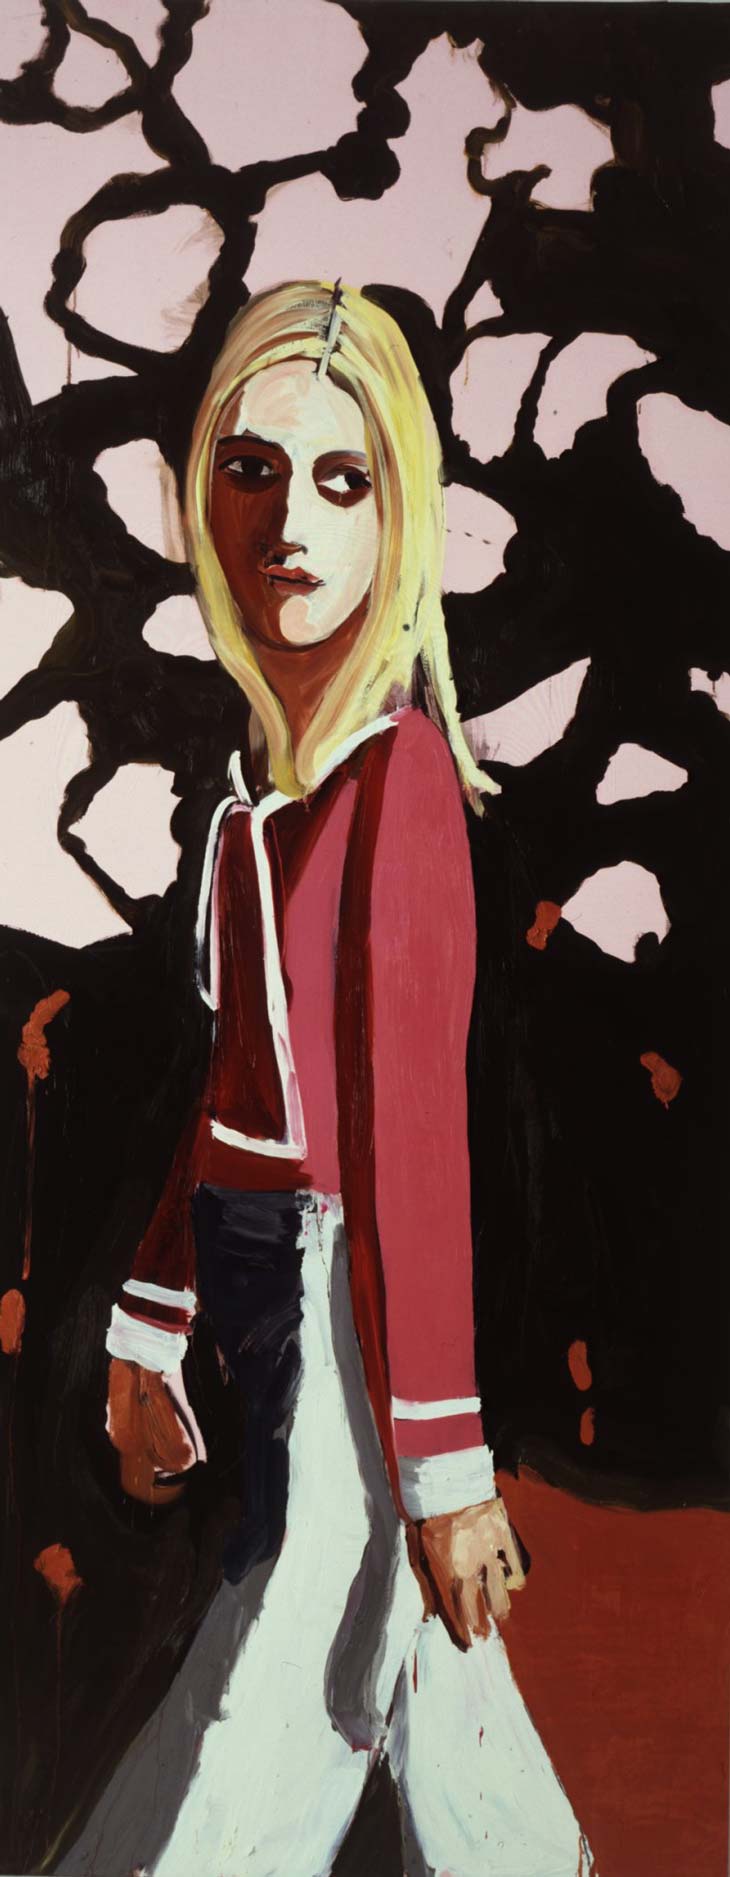 Woman With Flowers, 2004. Шанталь Джофф (иногда Шанталь Жоффе, англ. Chantal Joffe) - британская художница. Современная живопись. Contemporary art, paintings